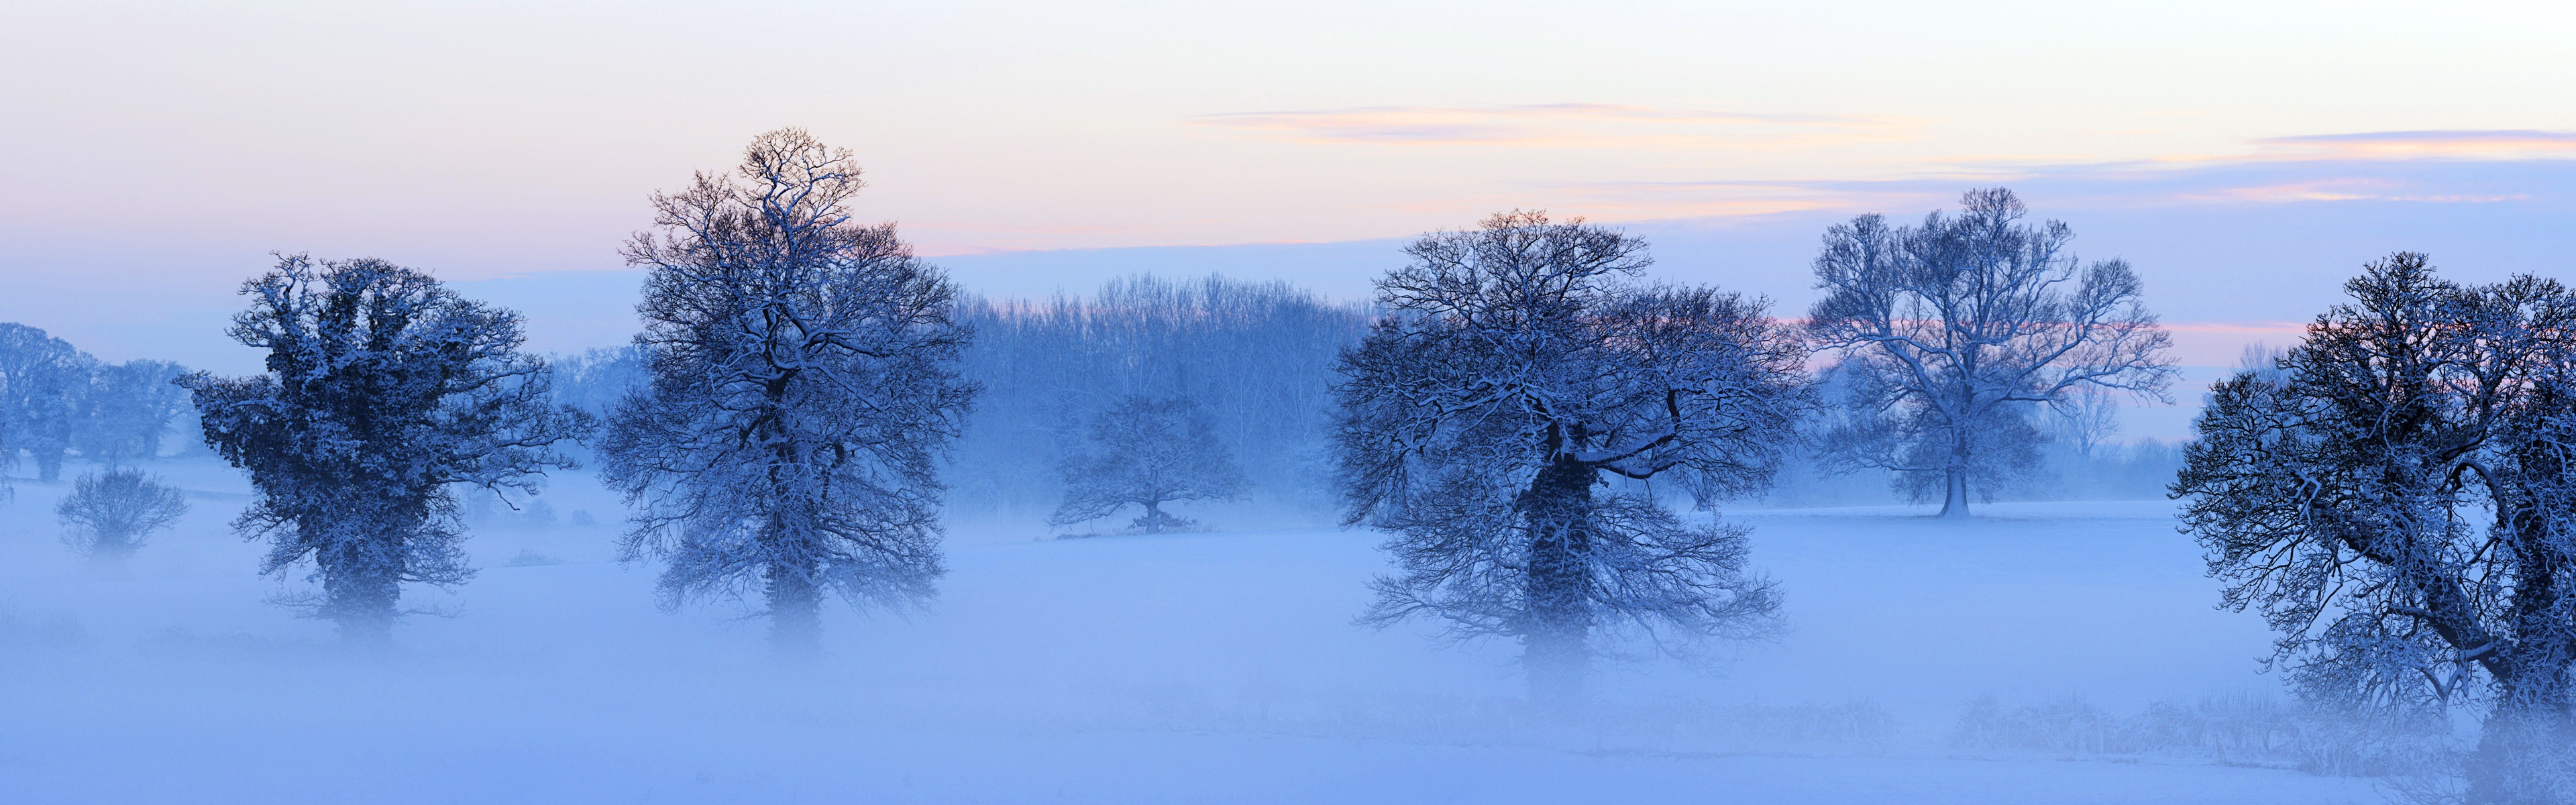 Belle neige froide d'hiver, de Windows 8 fonds d'écran widescreen panoramique #6 - 3840x1200